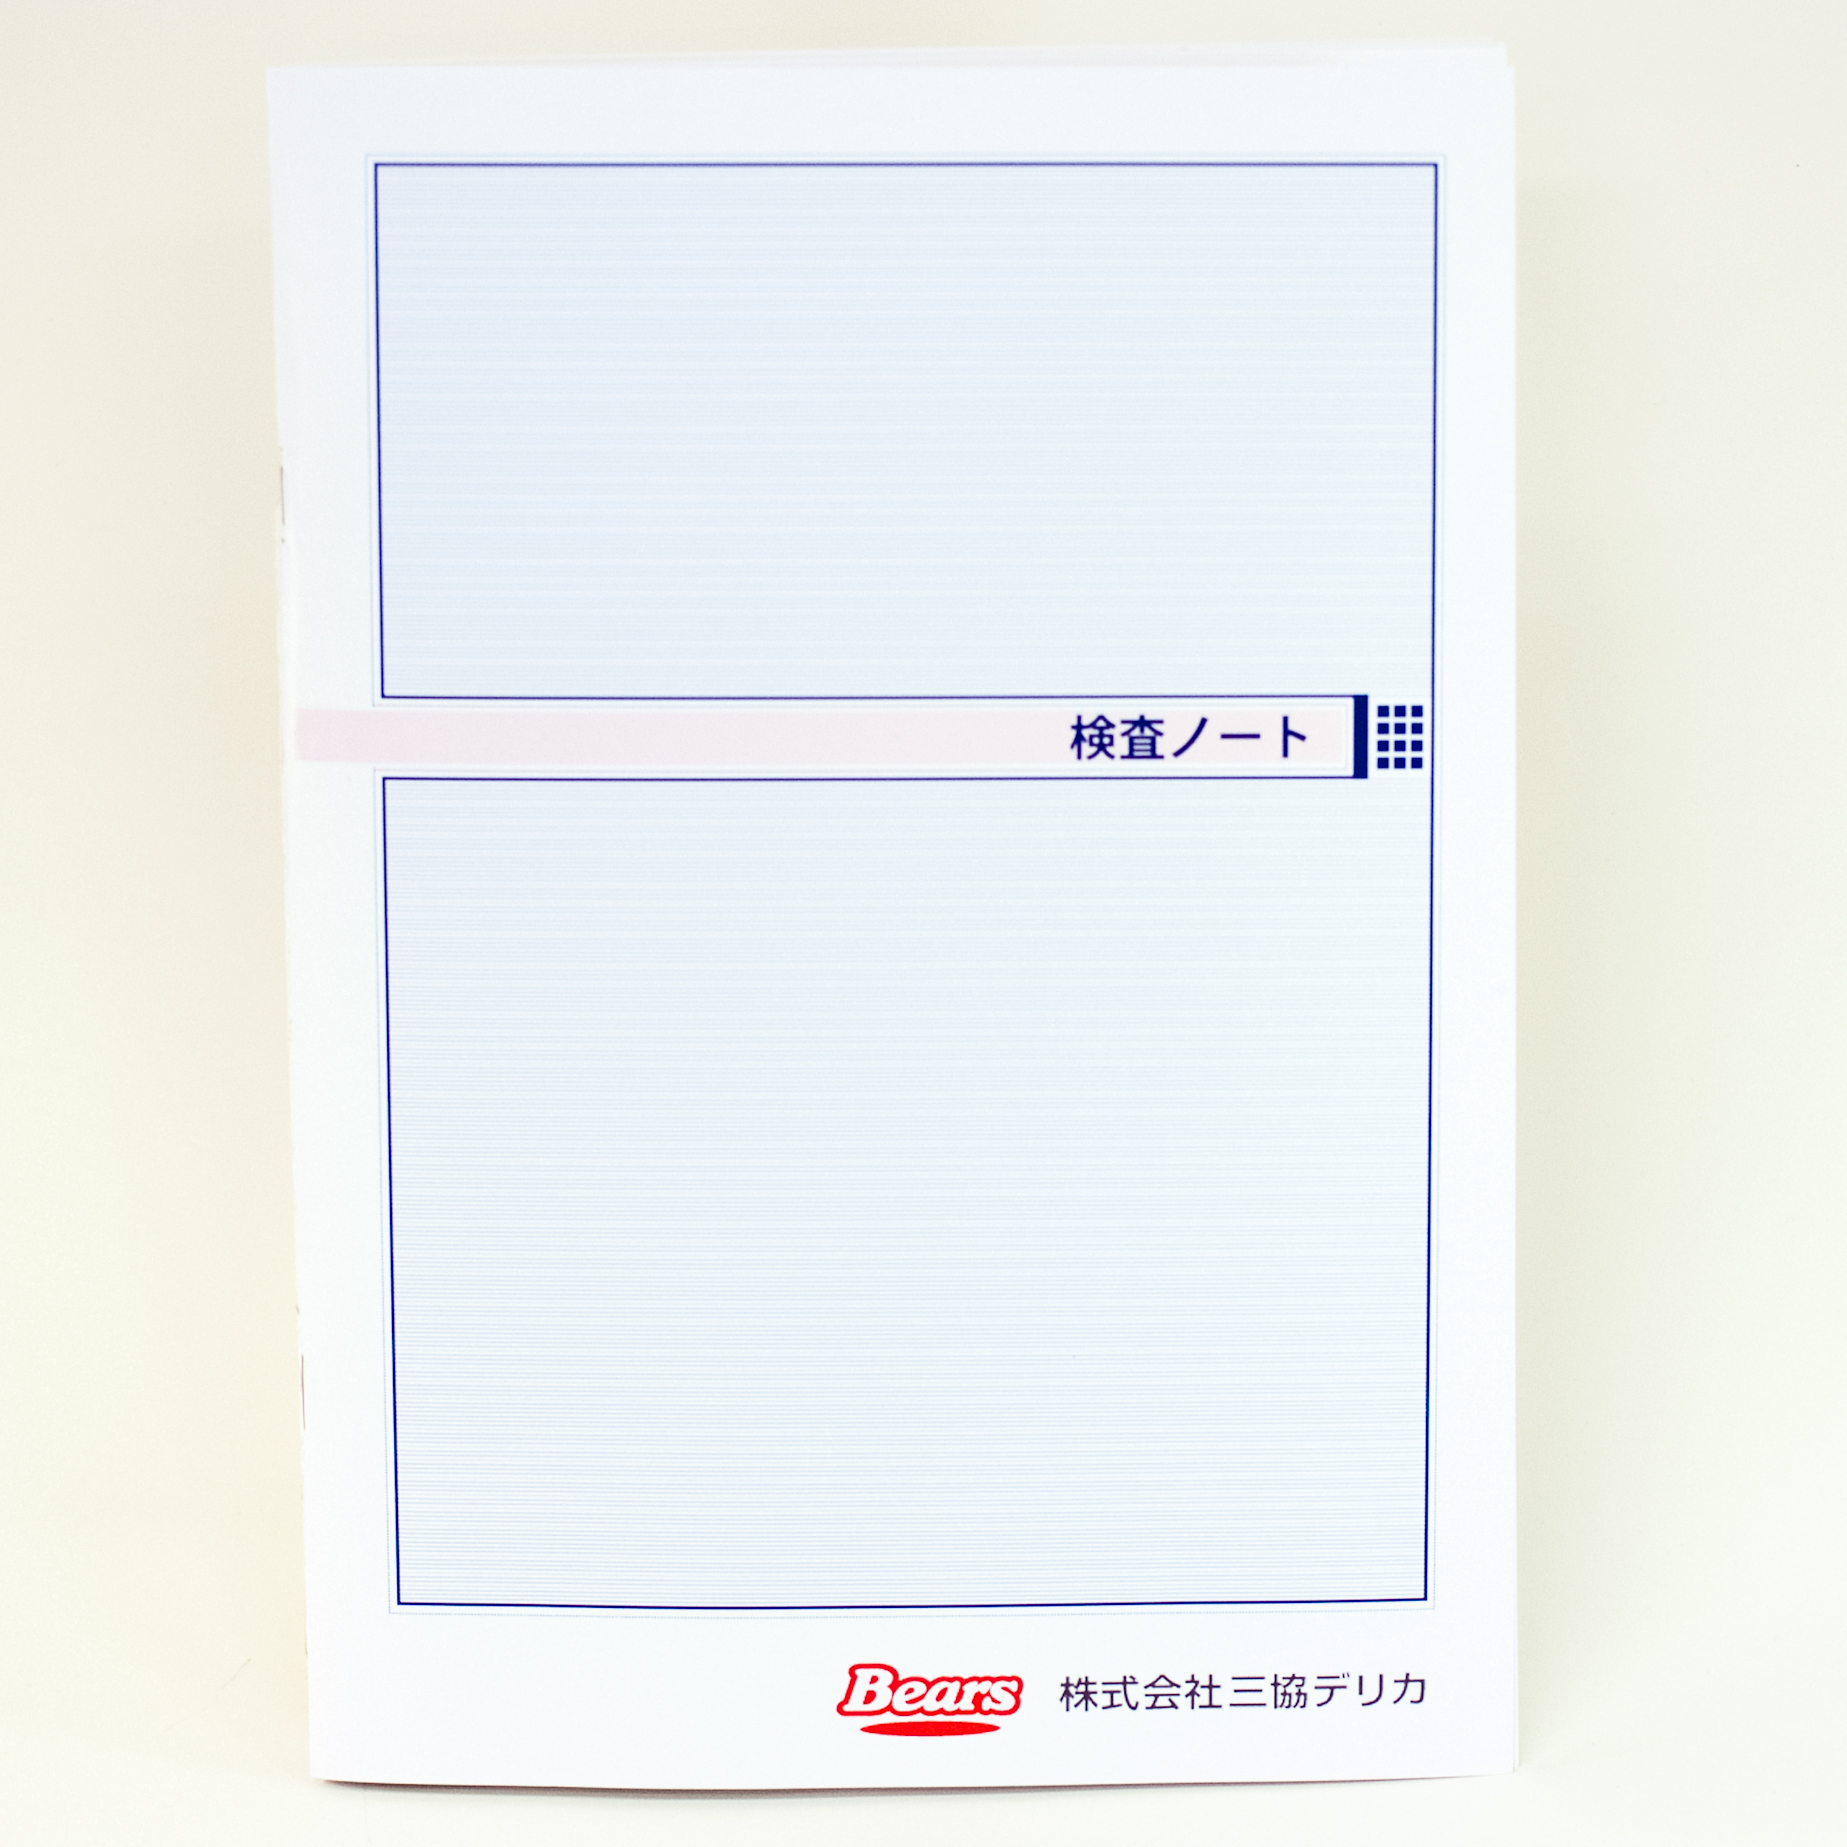 「株式会社三協デリカ 様」製作のオリジナルノート